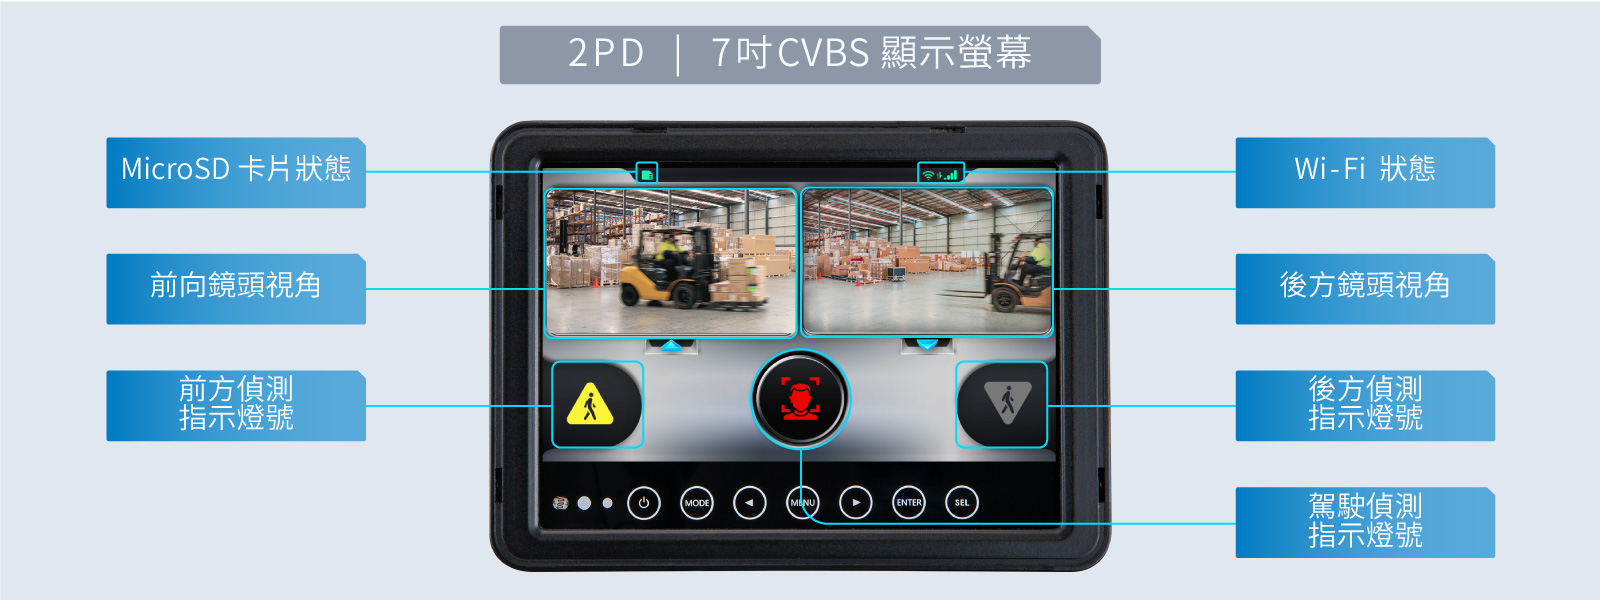 VIA Mobile360 Forklift Safety System 2pd display